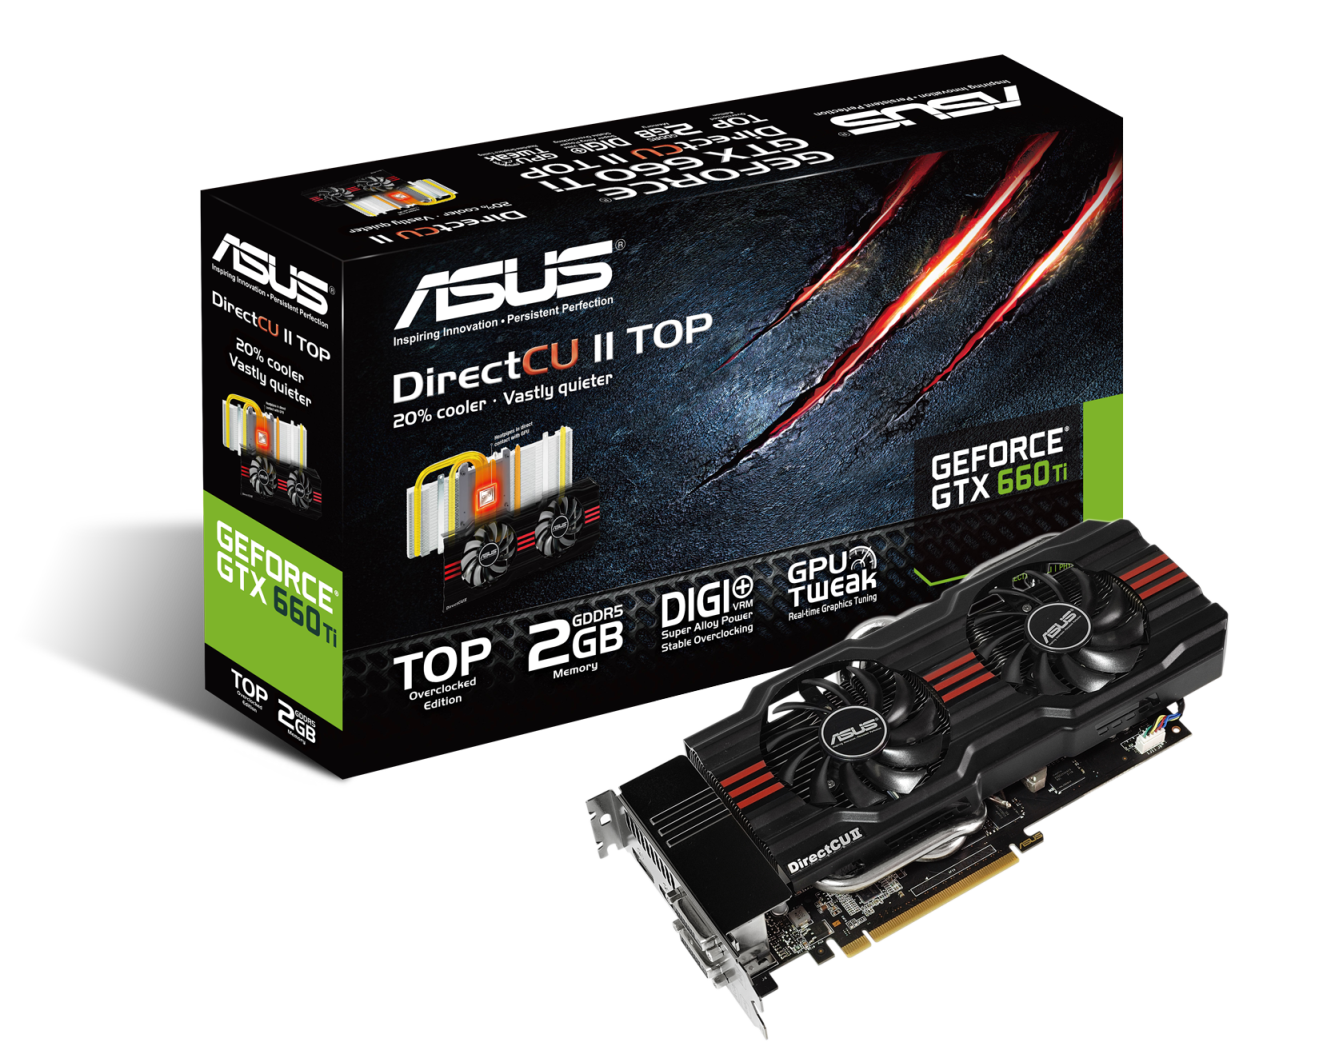 華碩GeForce® GTX 660 Ti DirectCU II TOP顯示卡全新登場